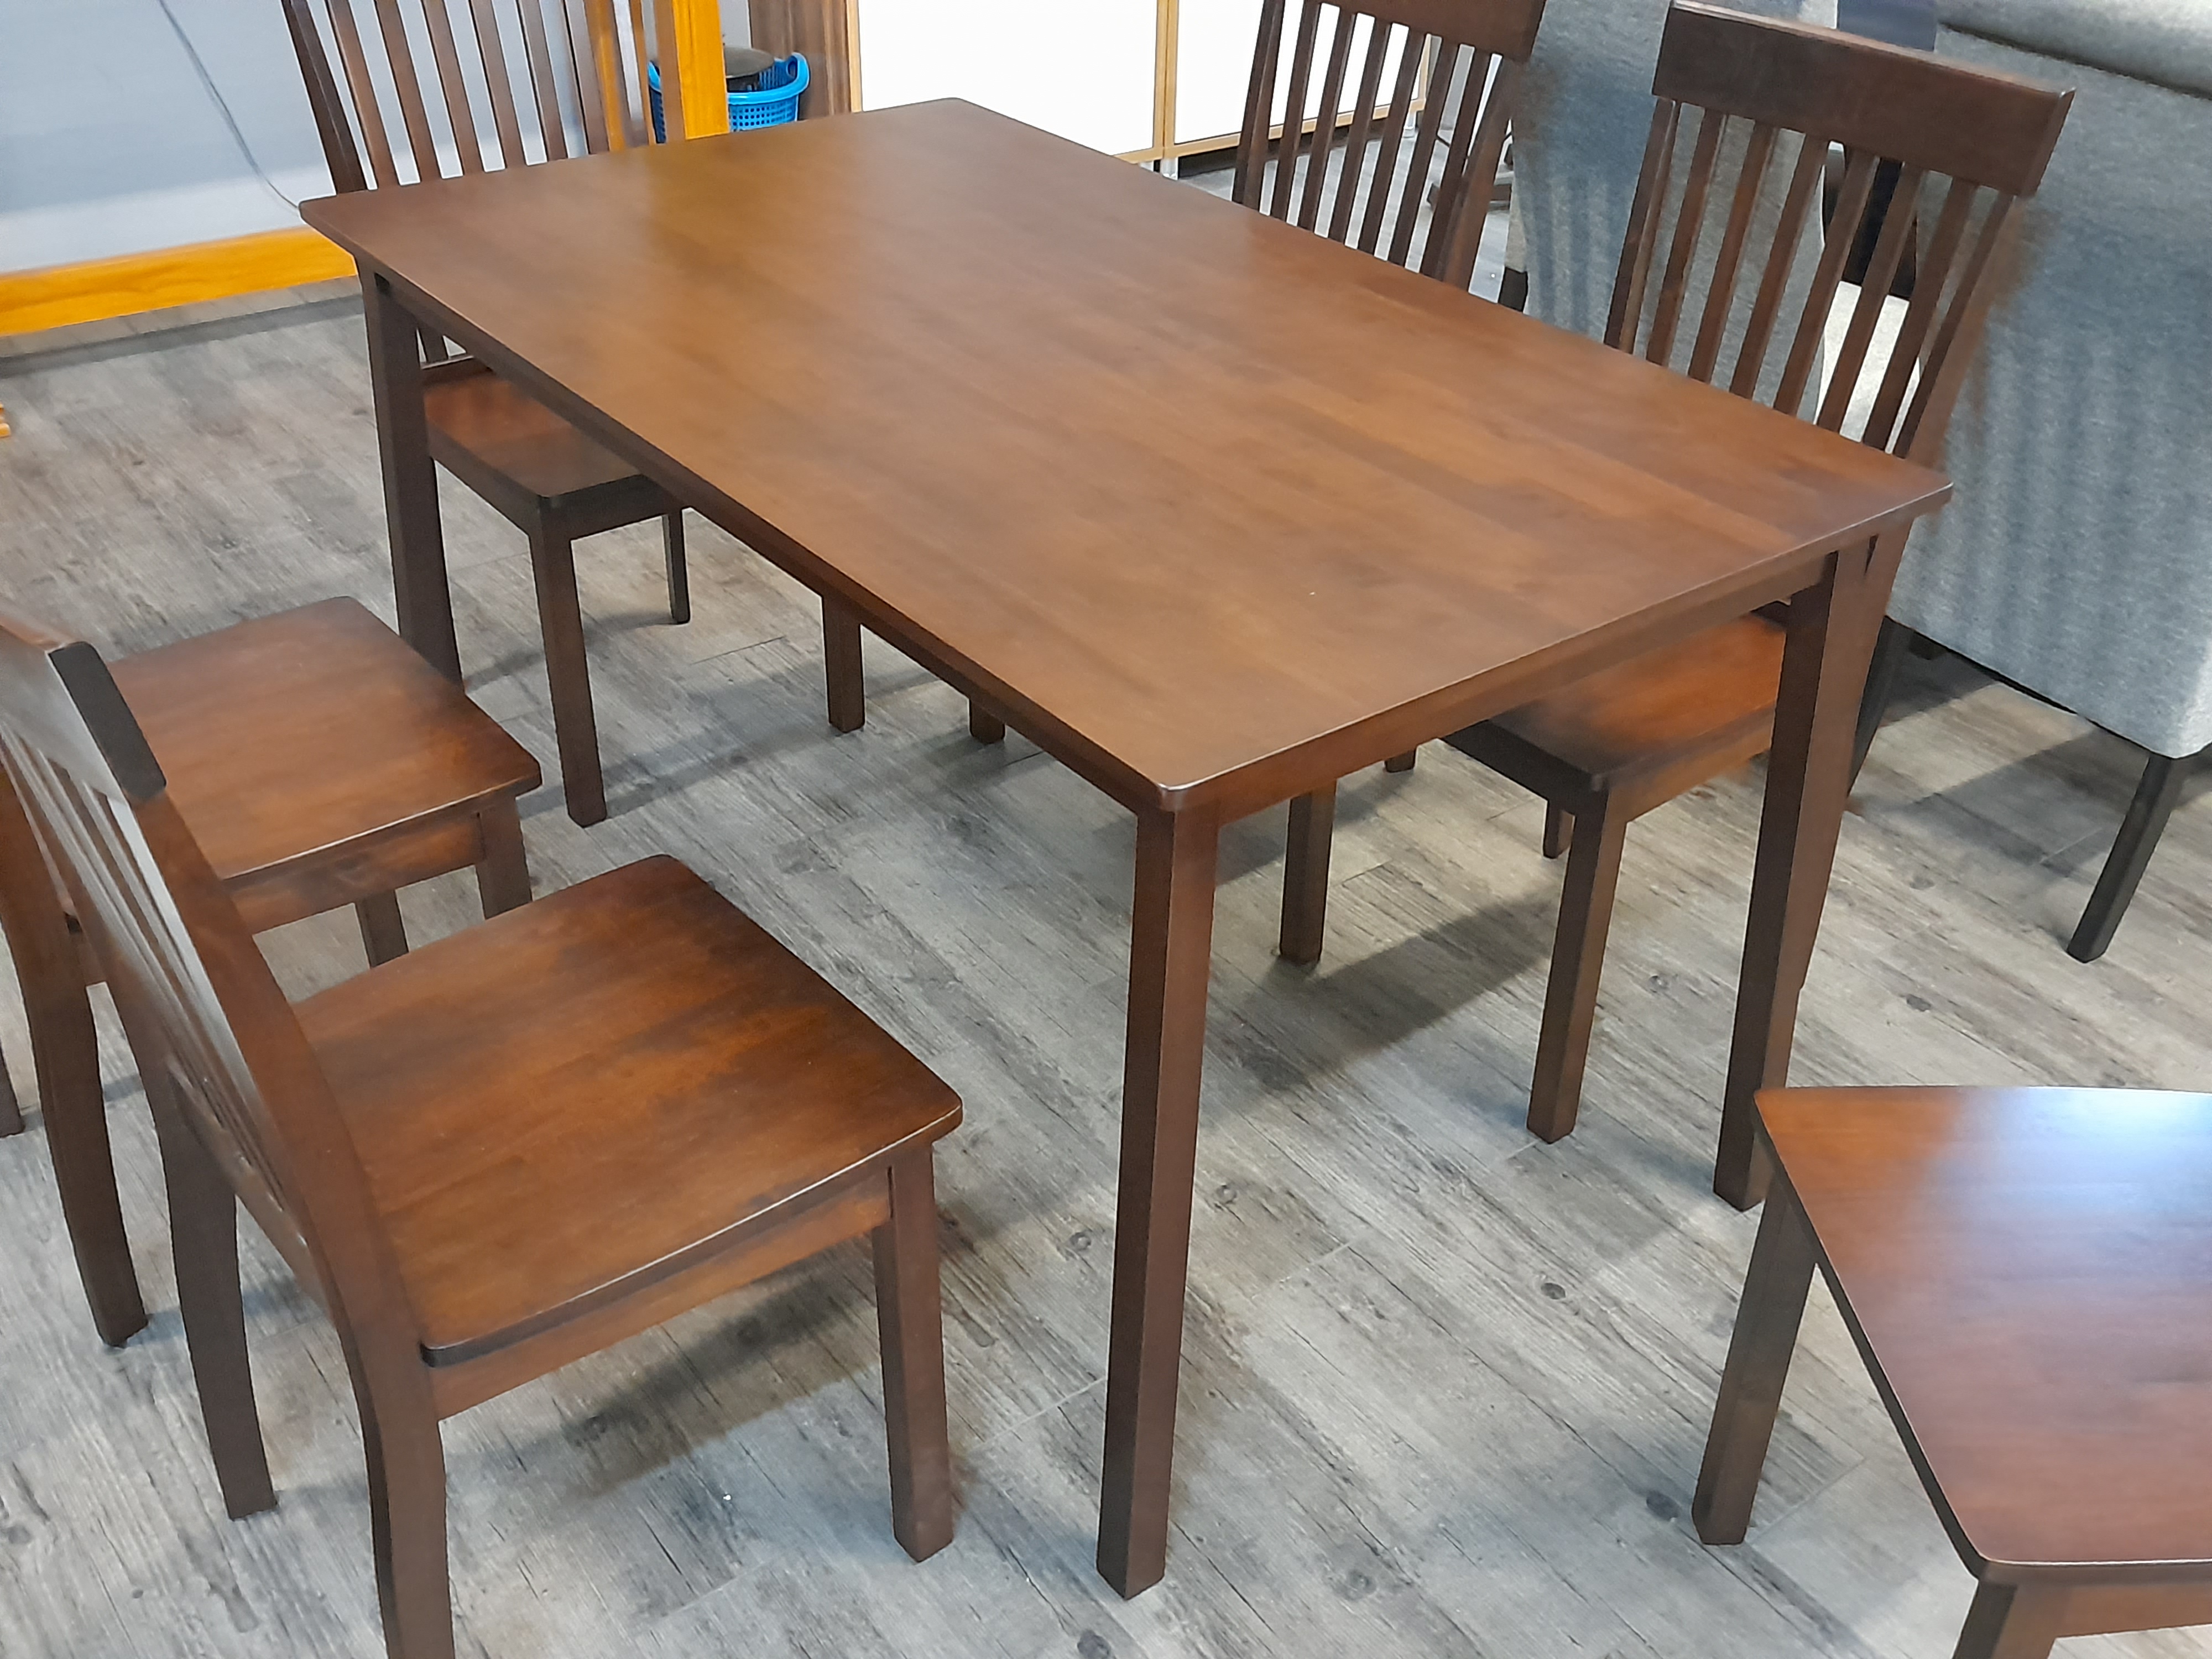 95051::LAMOYA(ลาโมย่า)::ชุดโต๊ะอาหารหน้าไม้ 6 ที่นั่ง โต๊ะ ขนาด ก1400xล800xส756 มม. เก้าอี้ขนาด ก420xล500xส960มม.โครงสร้างตัวโต๊ะและท็อปทำจากไม้ยางพารา ลวดลายสวยงาม โครงสร้างตัวเก้าอี้อาหารทำจากไม้ยางพารา รองรับน้ำหนักได้ดี ทำความสะอาดง่าย สวย แข็งแรง ทนทาน เบสช้อยส์ ชุดโต๊ะอาหา